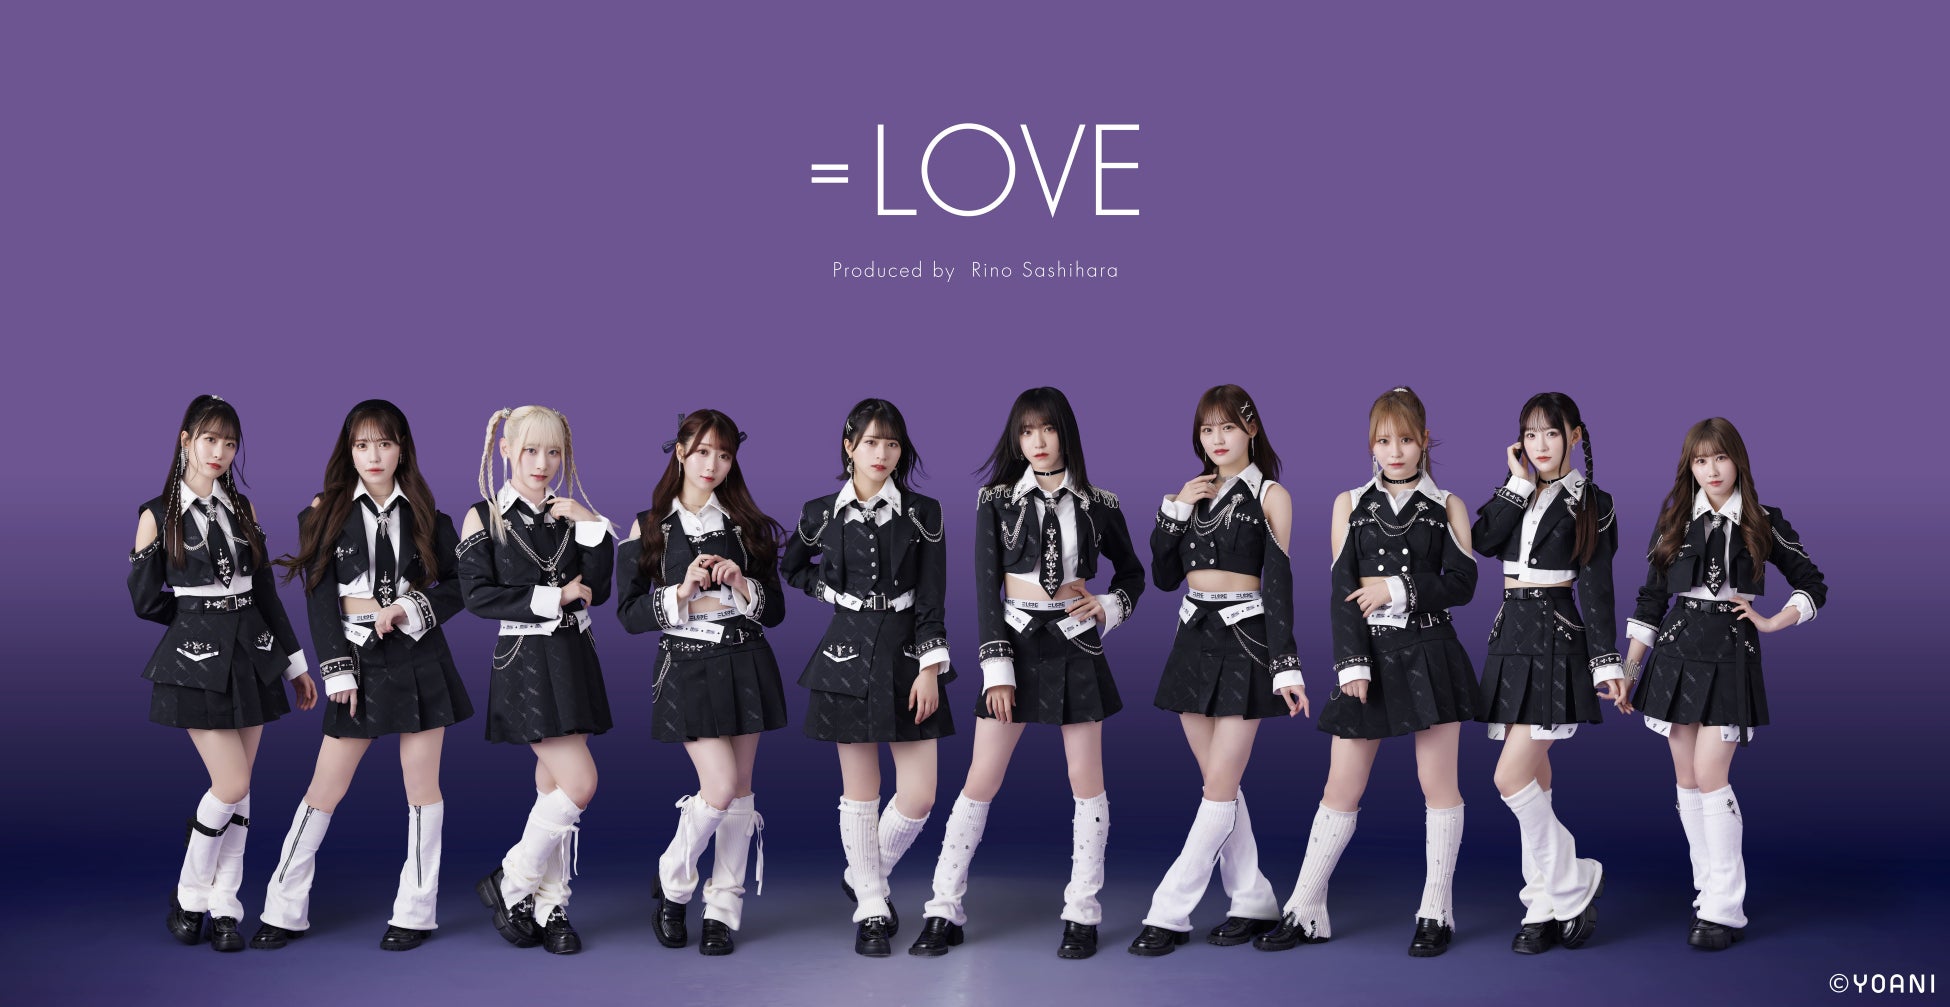 指原莉乃プロデュースによるアイドルグループ「=LOVE」「≠ME」。 本日、2グループによる「イコノイ合同ツーショット撮影会」をパシフィコ横浜Dホールにて開催‼